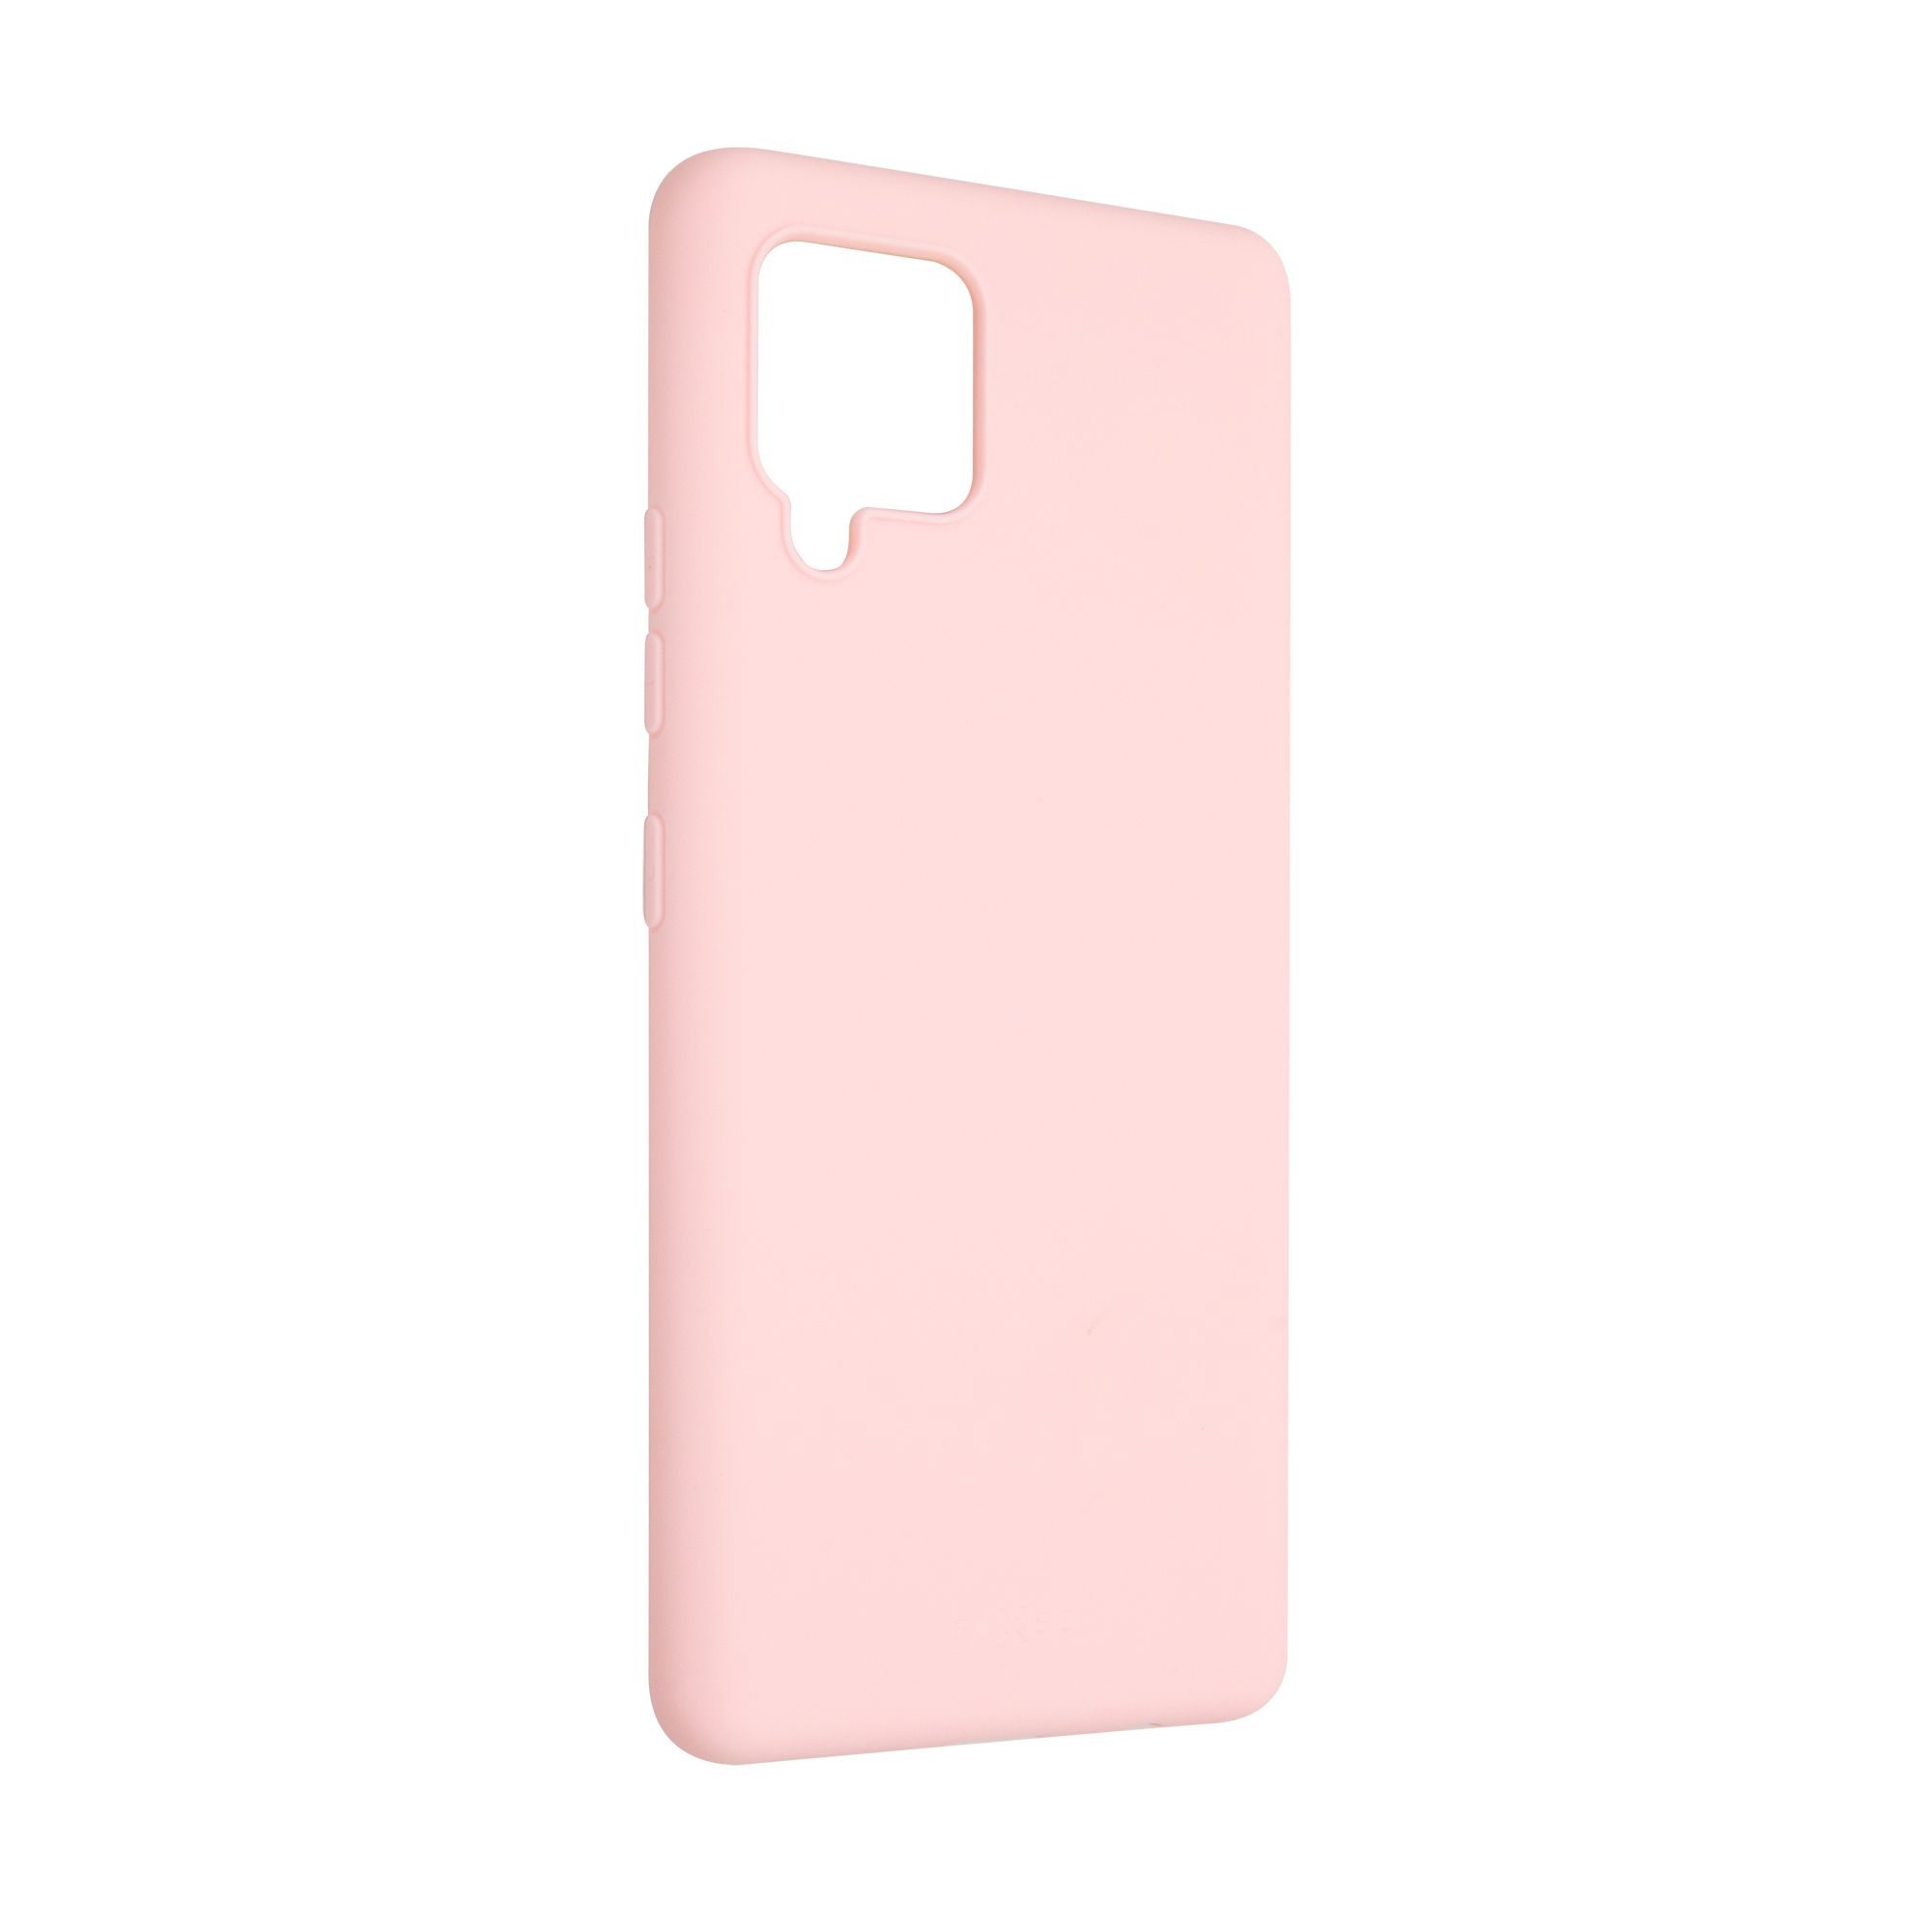 Zadní pogumovaný kryt Story pro Samsung Galaxy A42 5G/ M42 5G, růžový